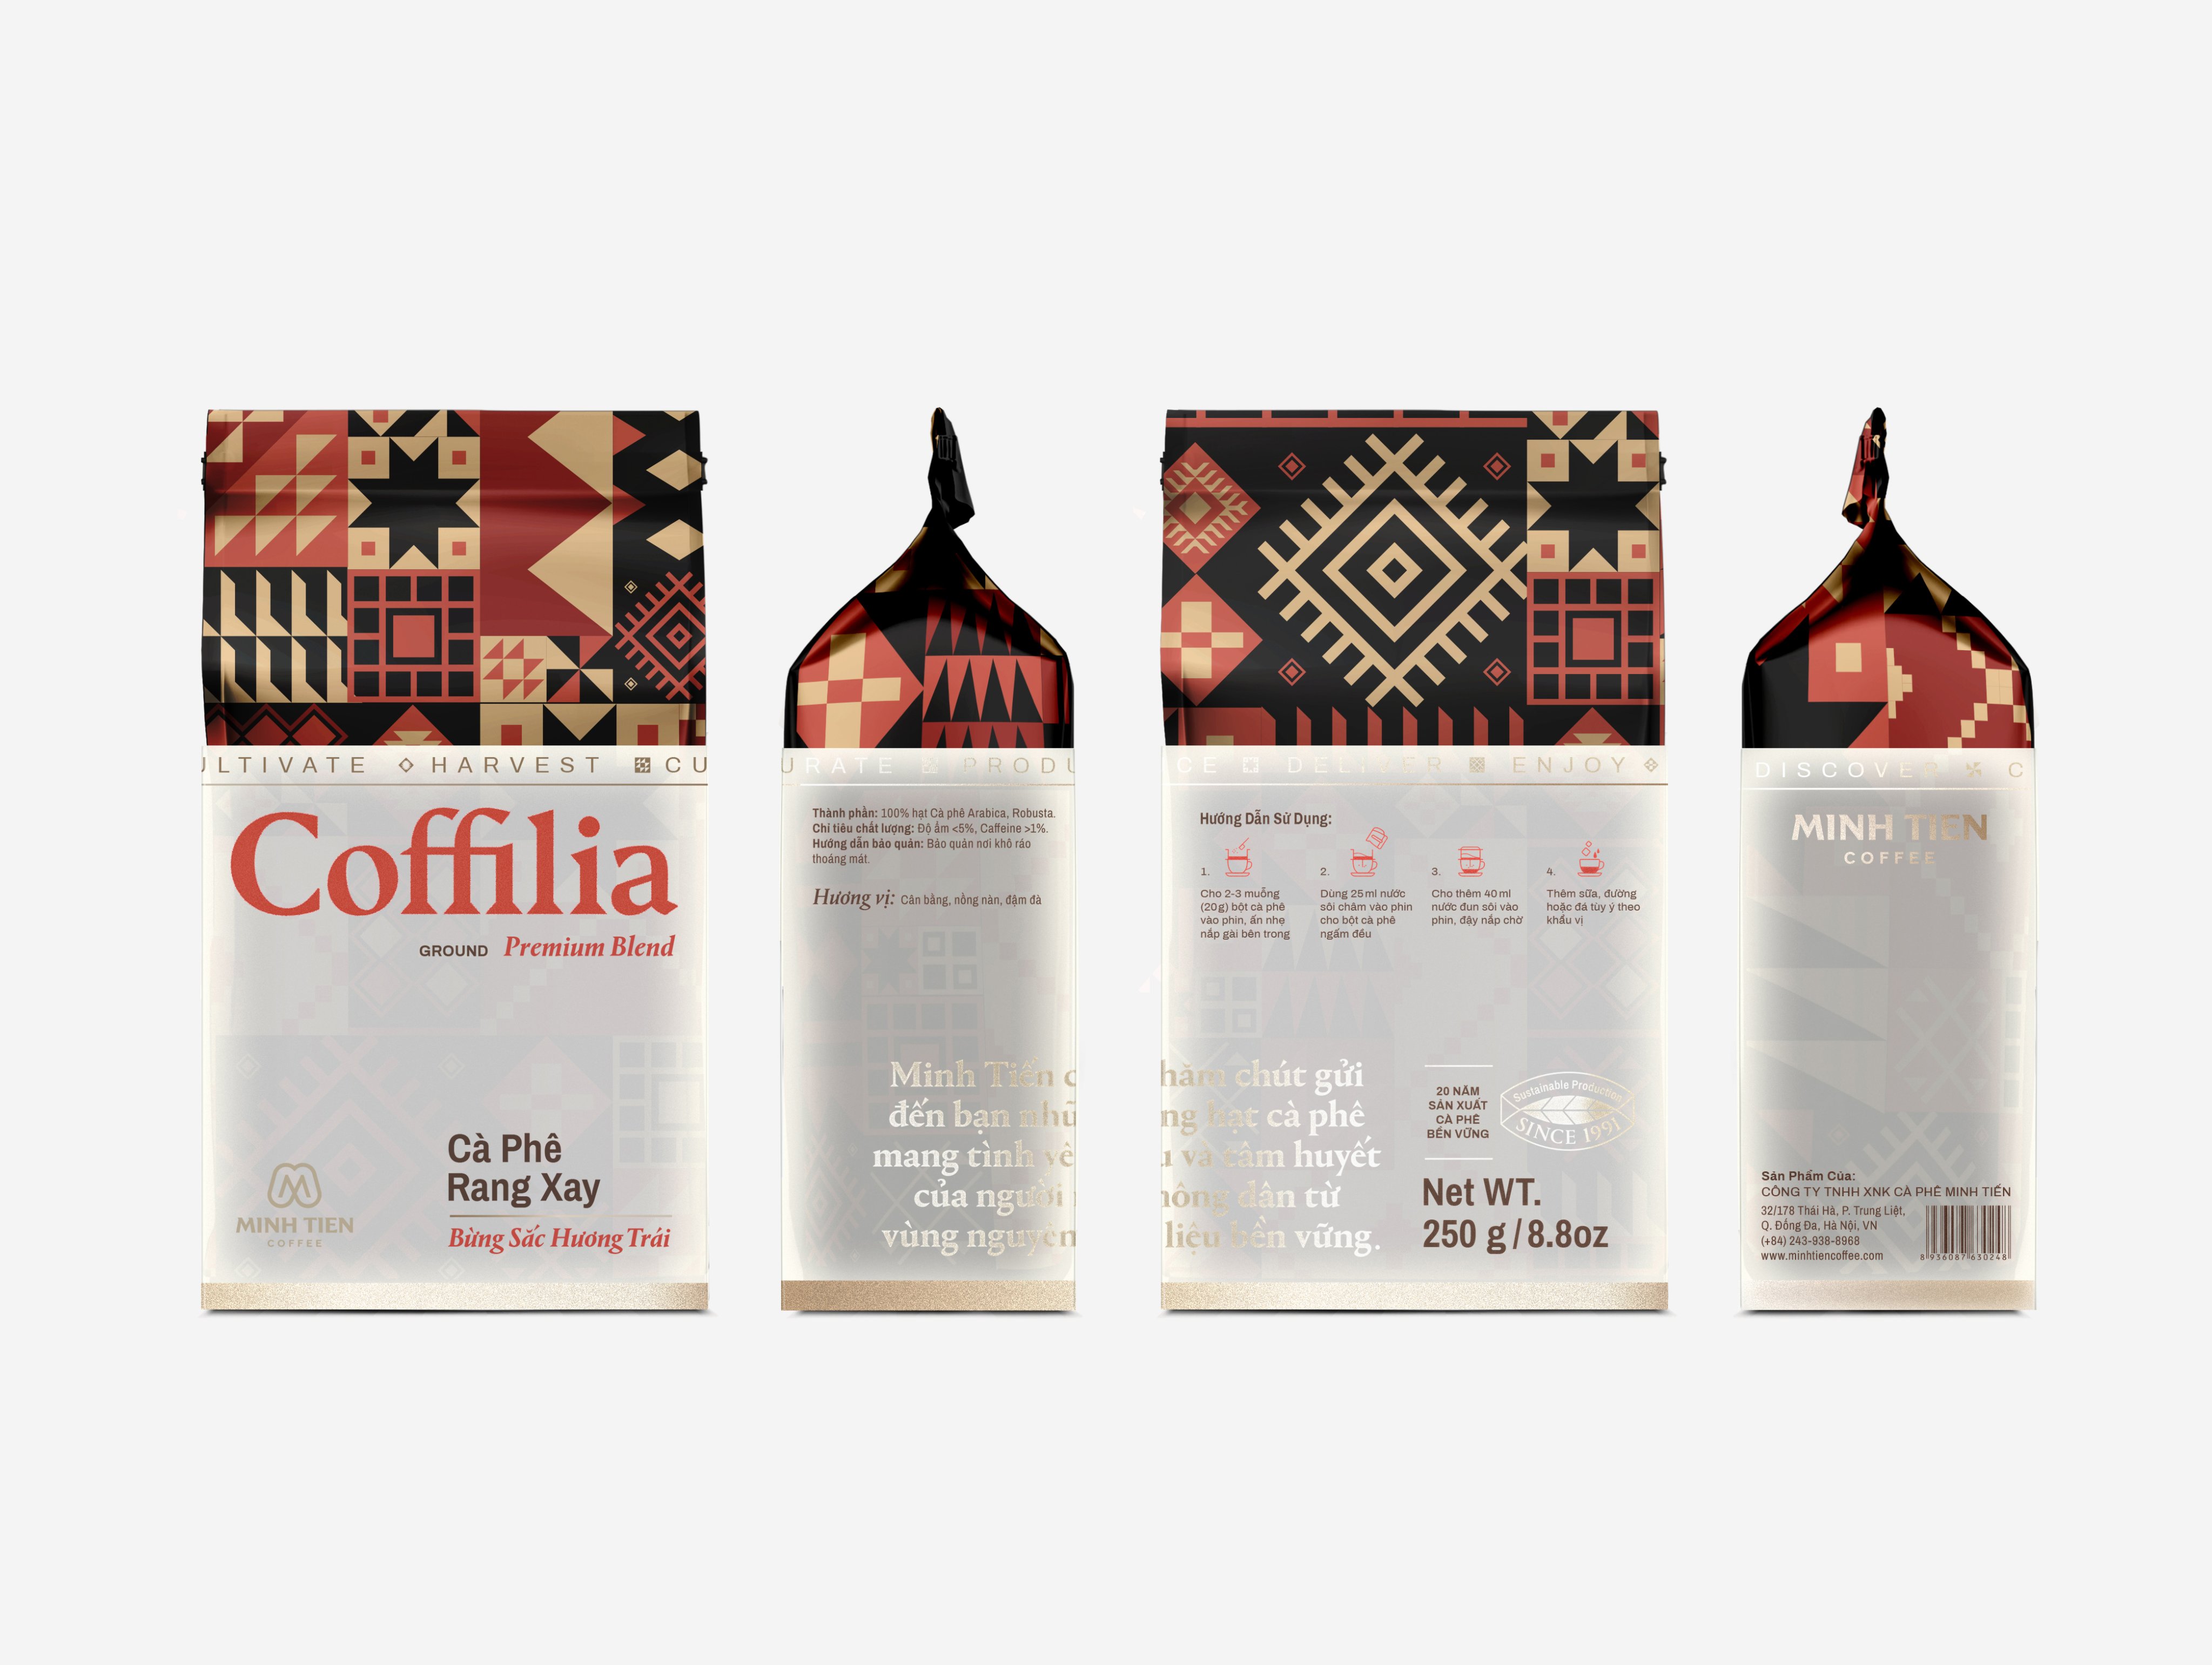 Cà phê rang xay - Coffilia - Bừng sắc hương trái (túi 250g)